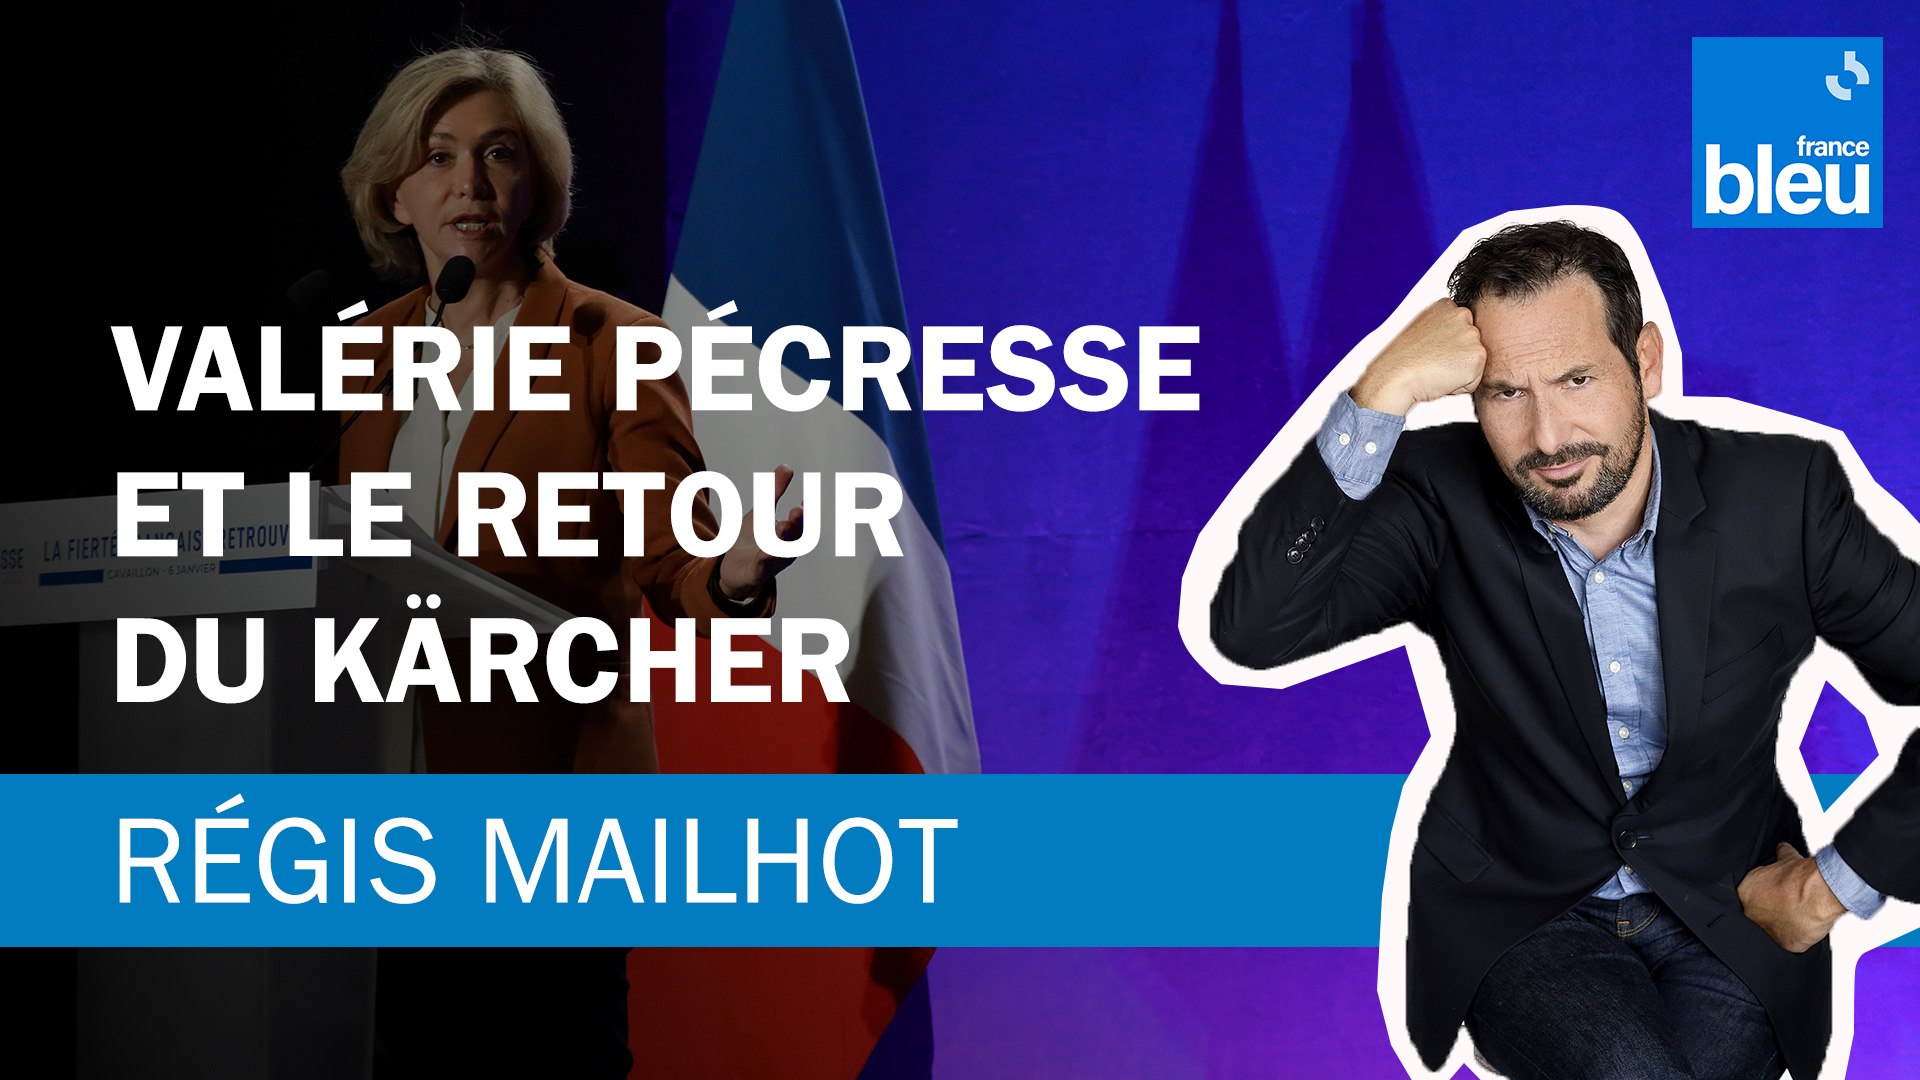 Régis Mailhot : Valérie Pécresse et le retour du Kärcher - Vidéo Dailymotion